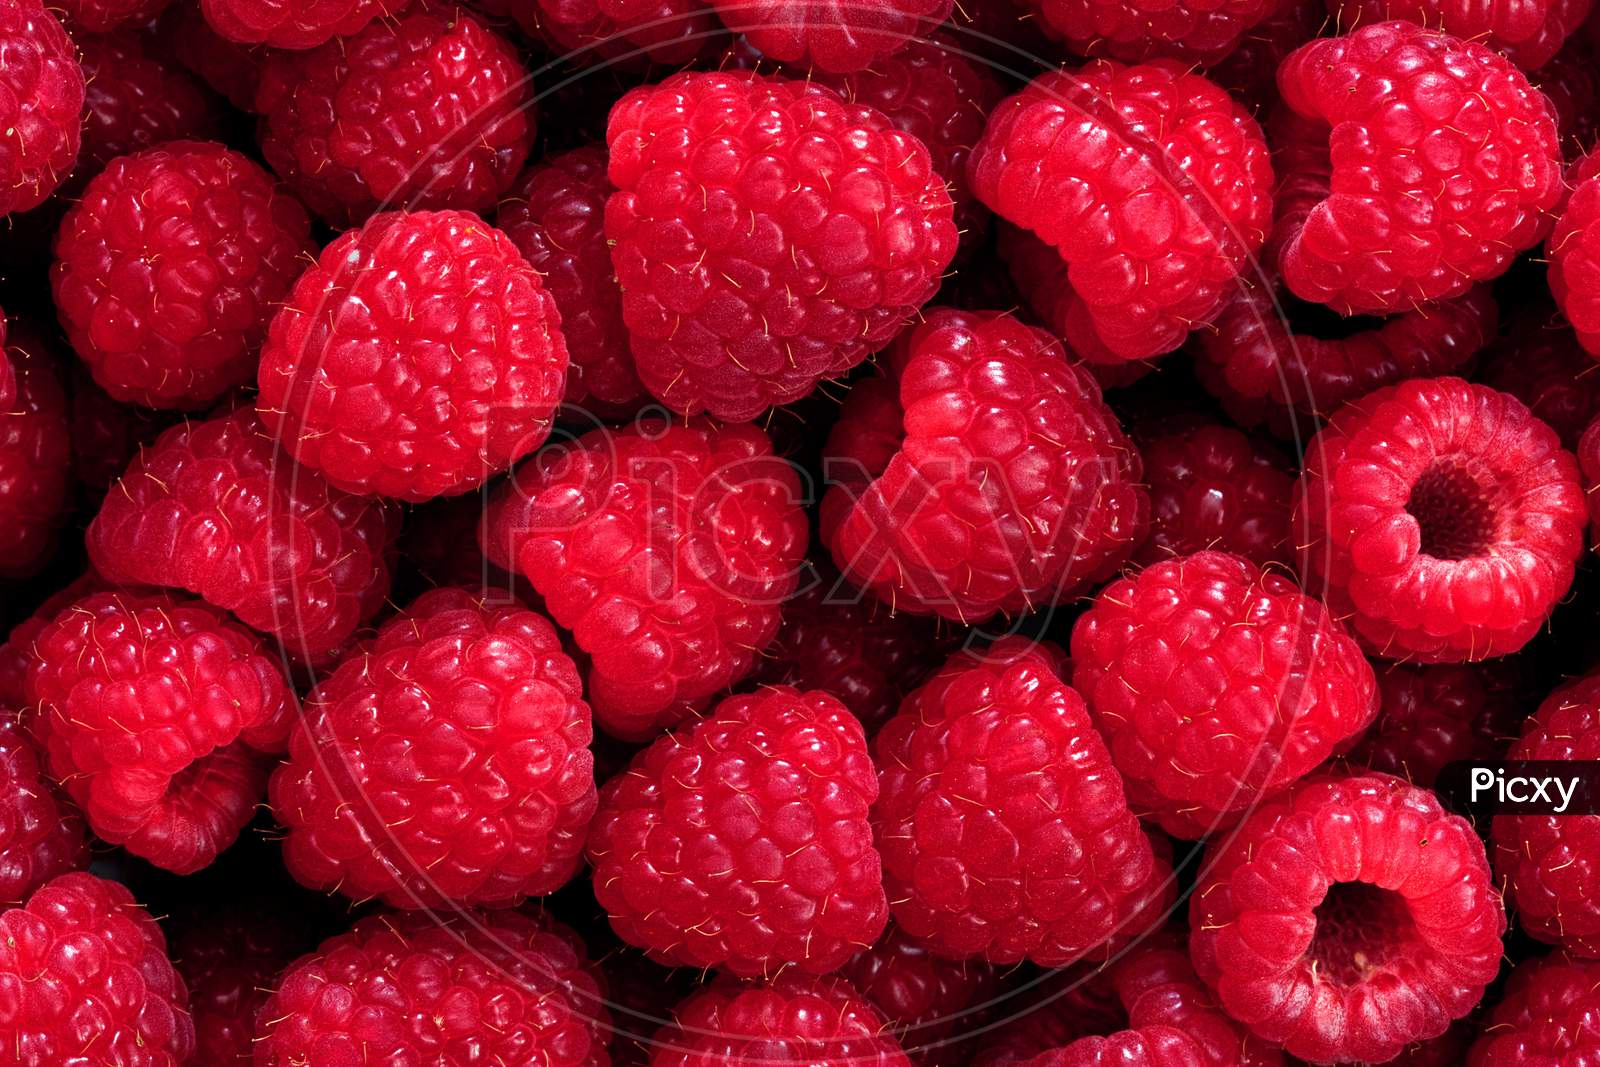 Beautiful Photo Of Ripe And Tasty Raspberries. Macro Shot Of Raspberries. 